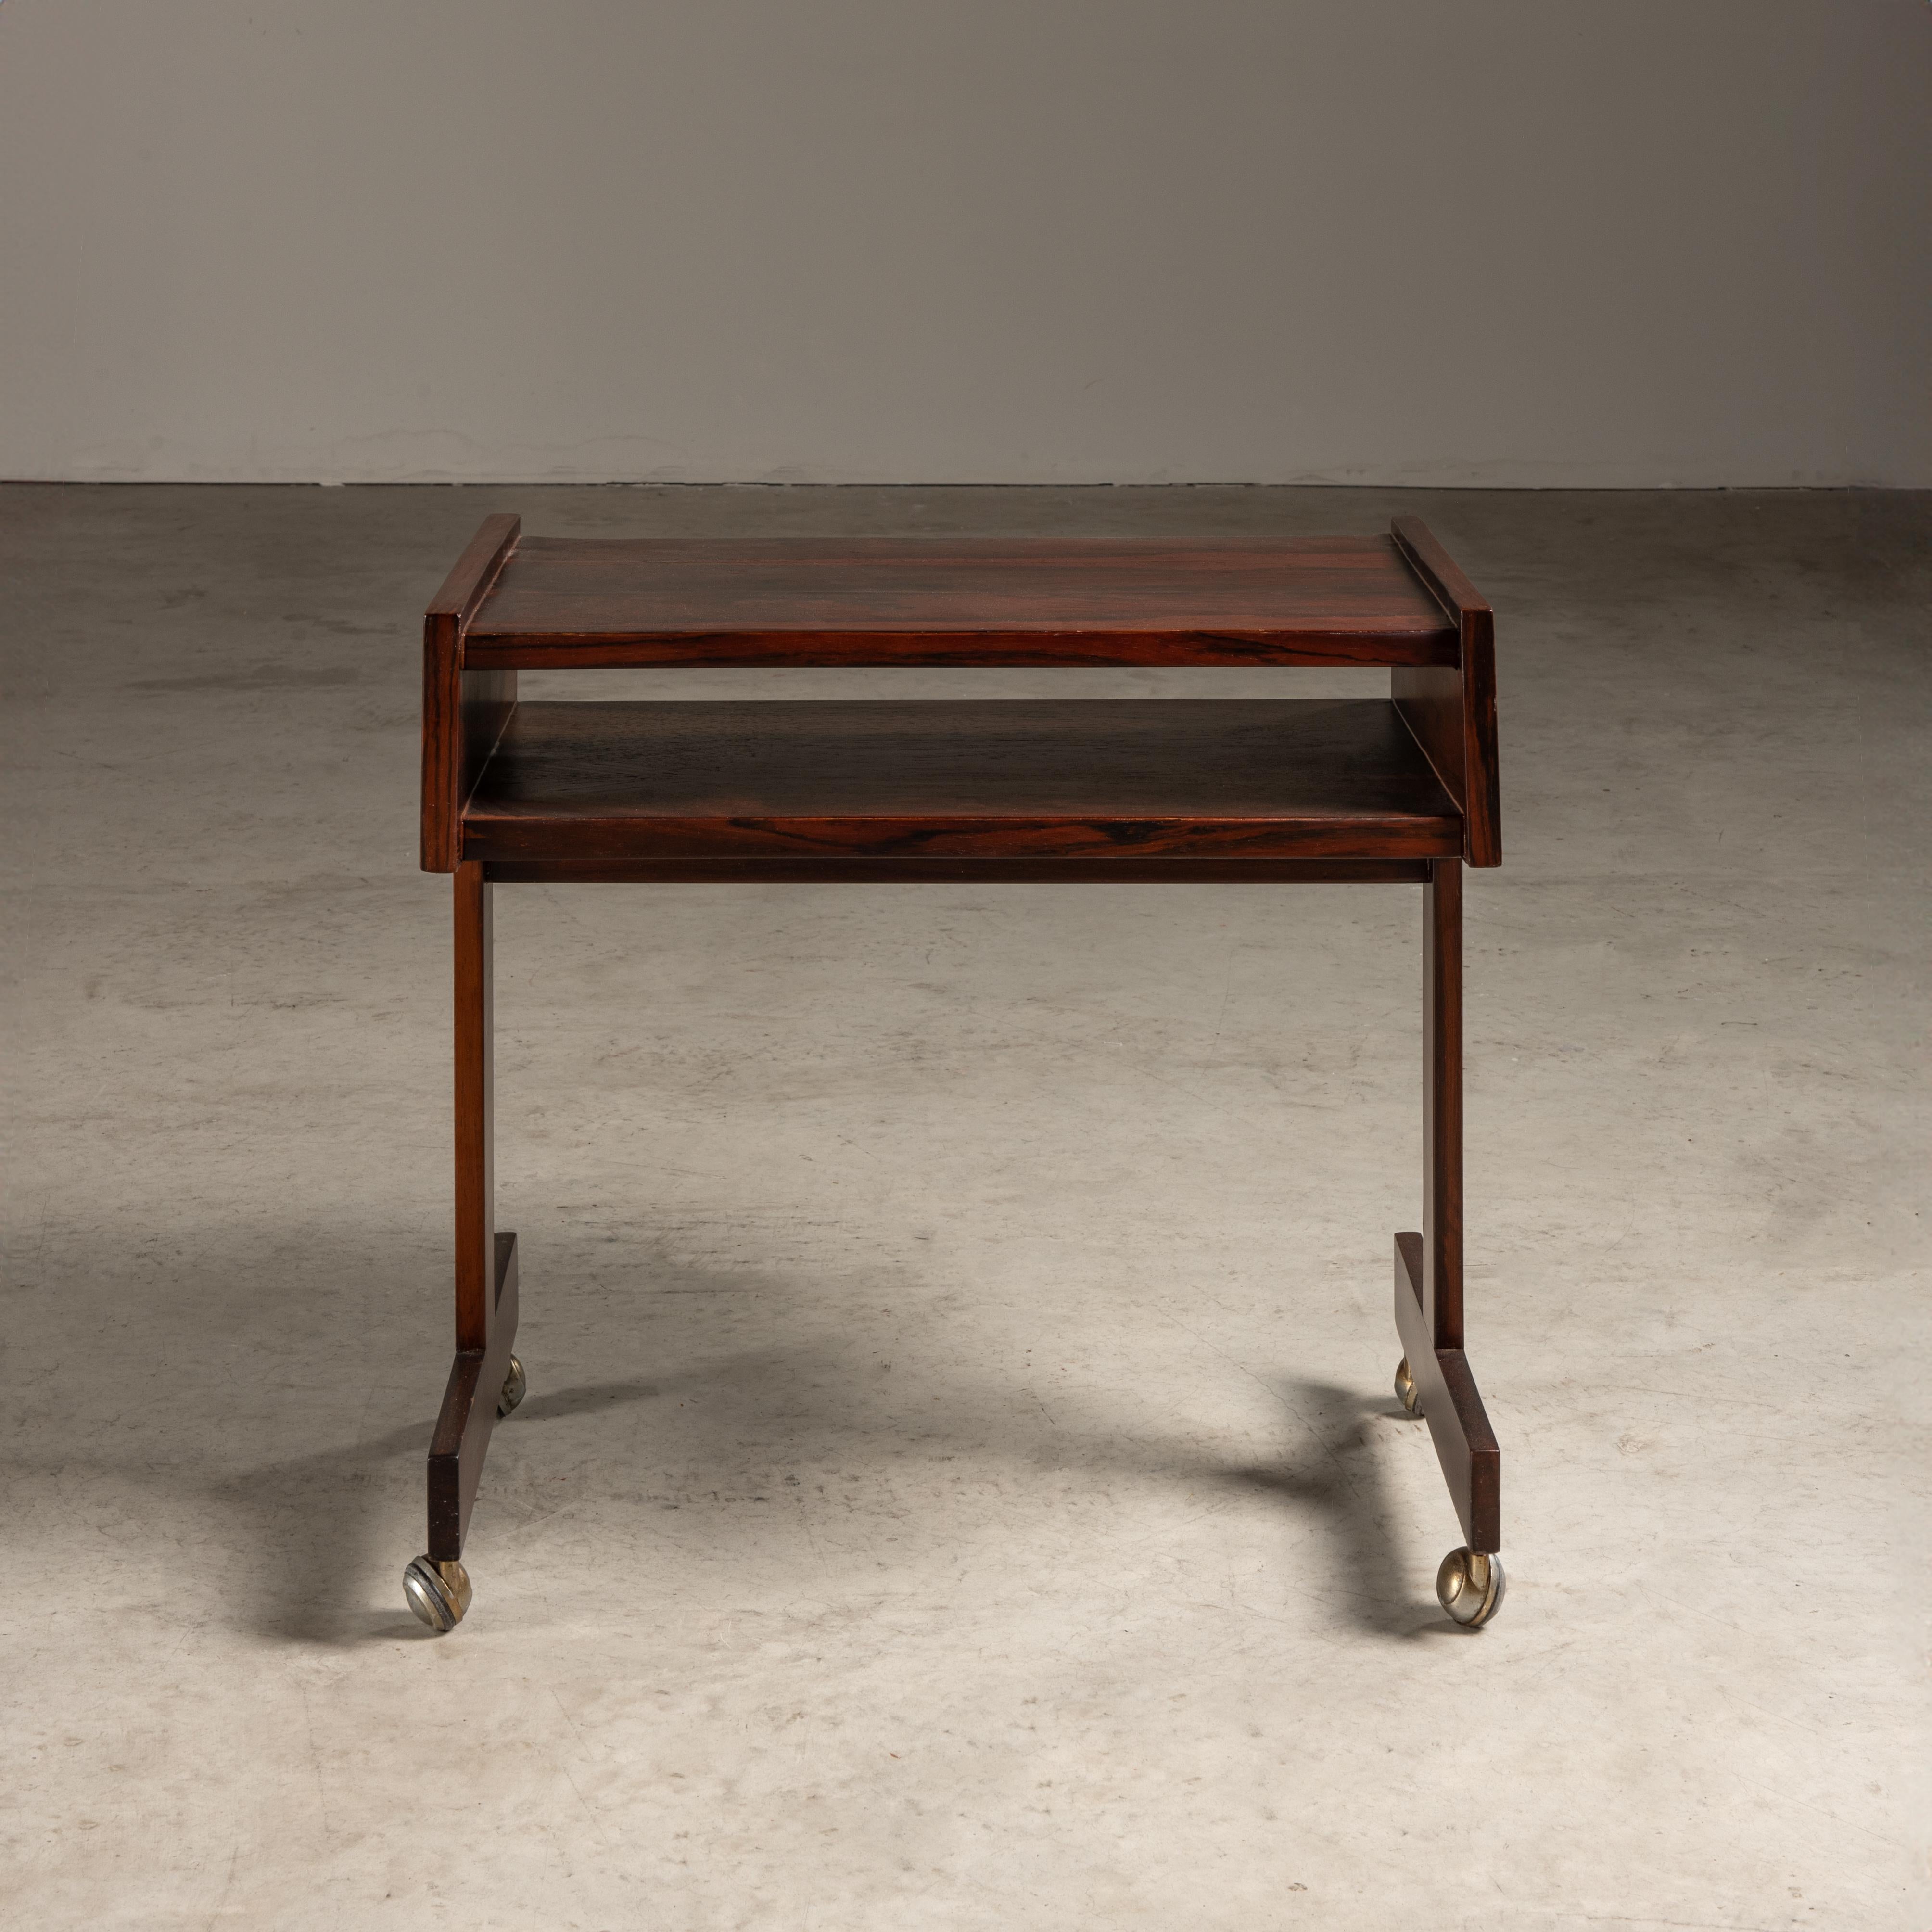 Cette table d'appoint de Sergio Rodrigues est une quintessence du mobilier brésilien du milieu du siècle, qui allie élégance et fonctionnalité pratique.

La table est fabriquée en bois brésilien, un bois riche et foncé qui était couramment utilisé